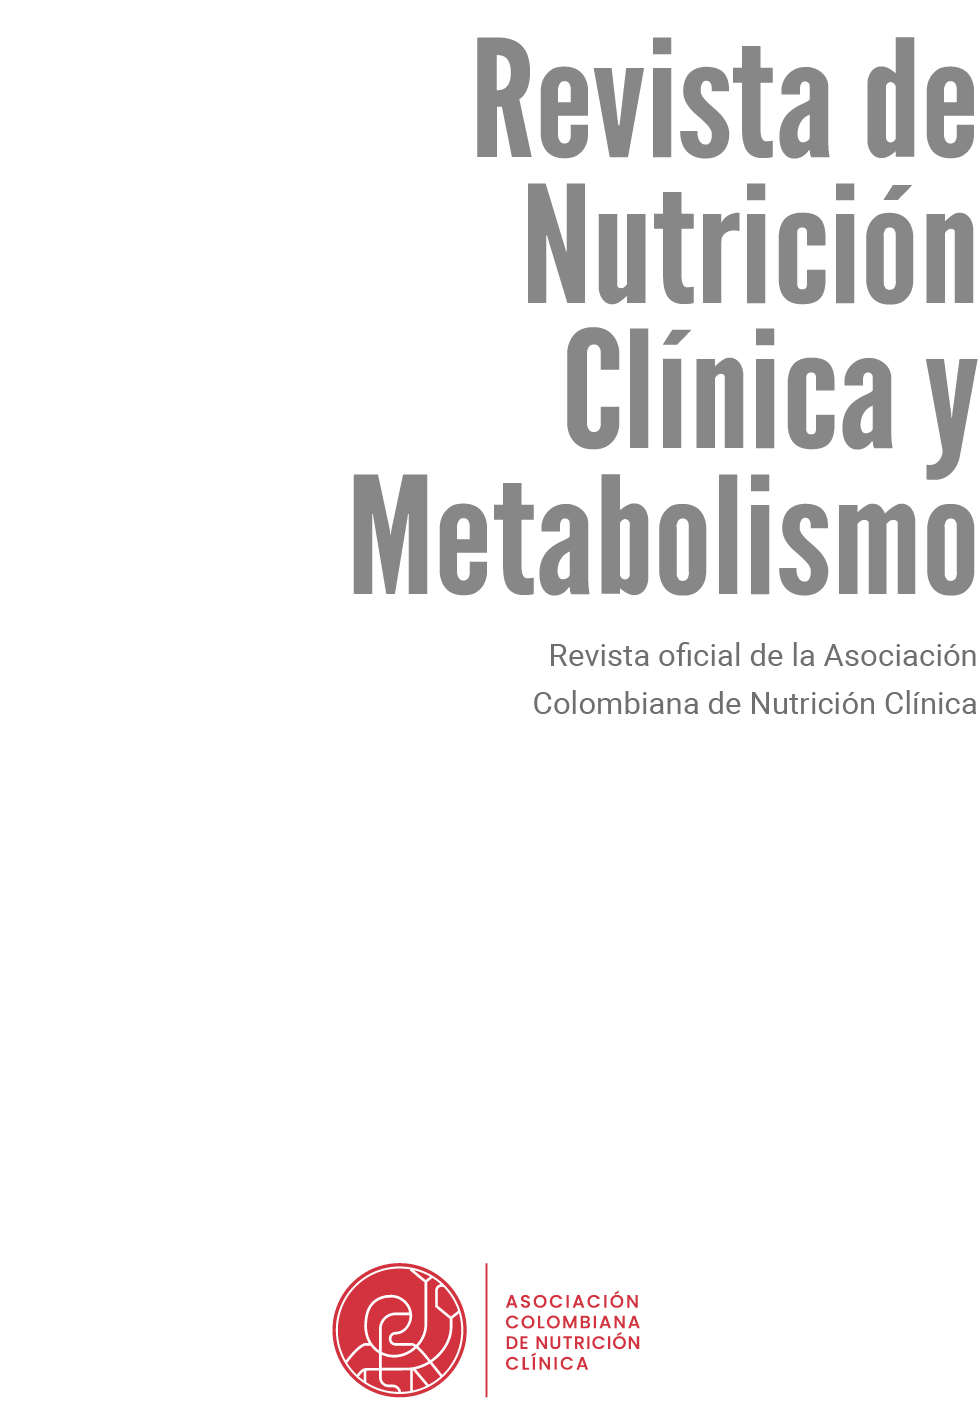 Susurro Ernest Shackleton fórmula Vista de Revista completa Vol 5 N 3 | Revista de Nutrición Clínica y  Metabolismo